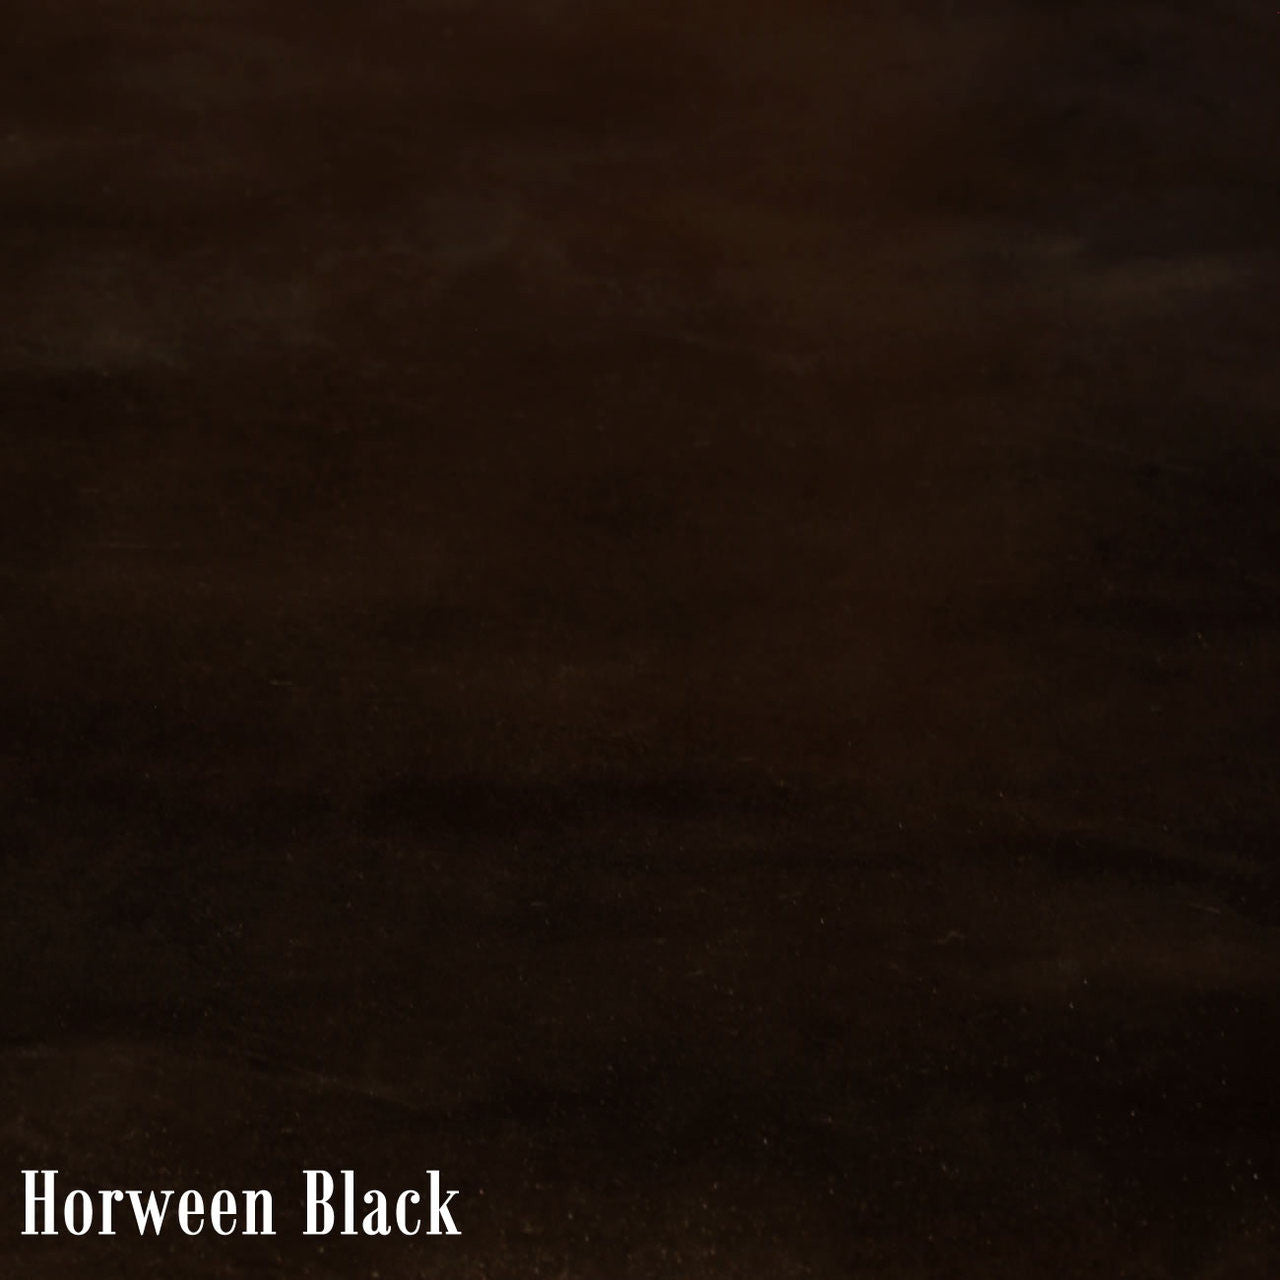 Horween Black